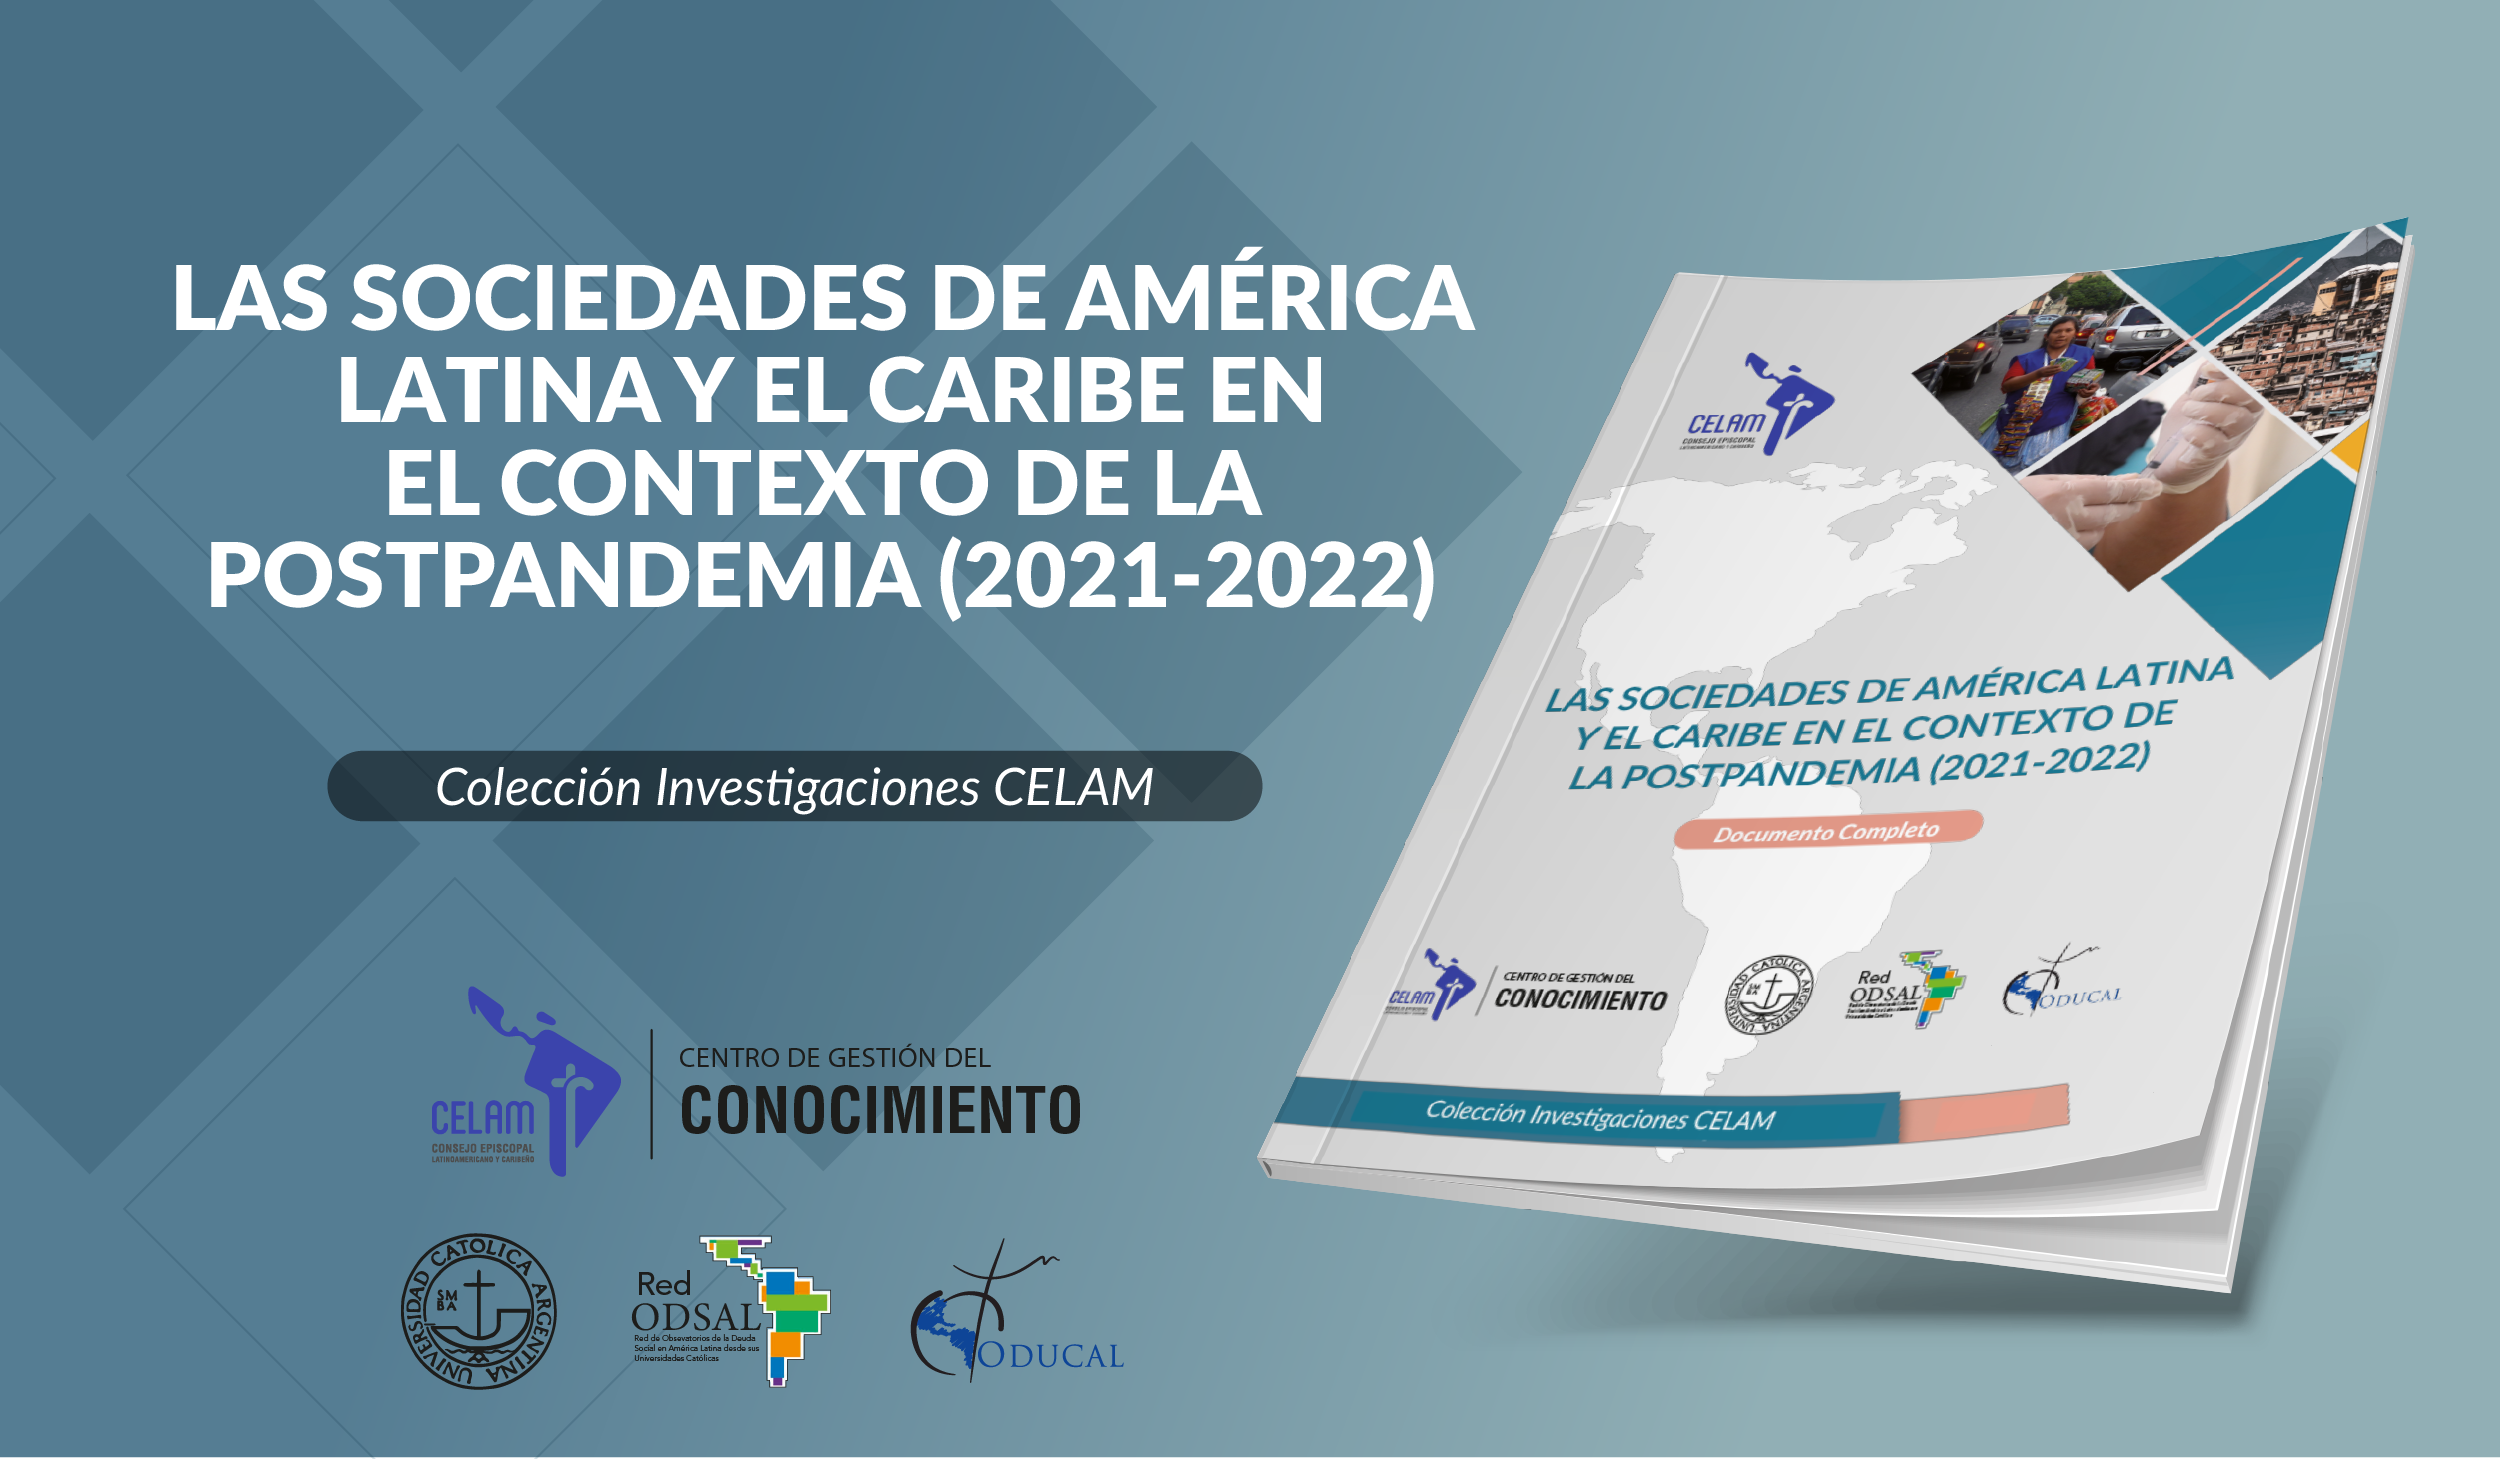 Las sociedades de América Latina y el Caribe en el contexto de la postpandemia (2021-2022)